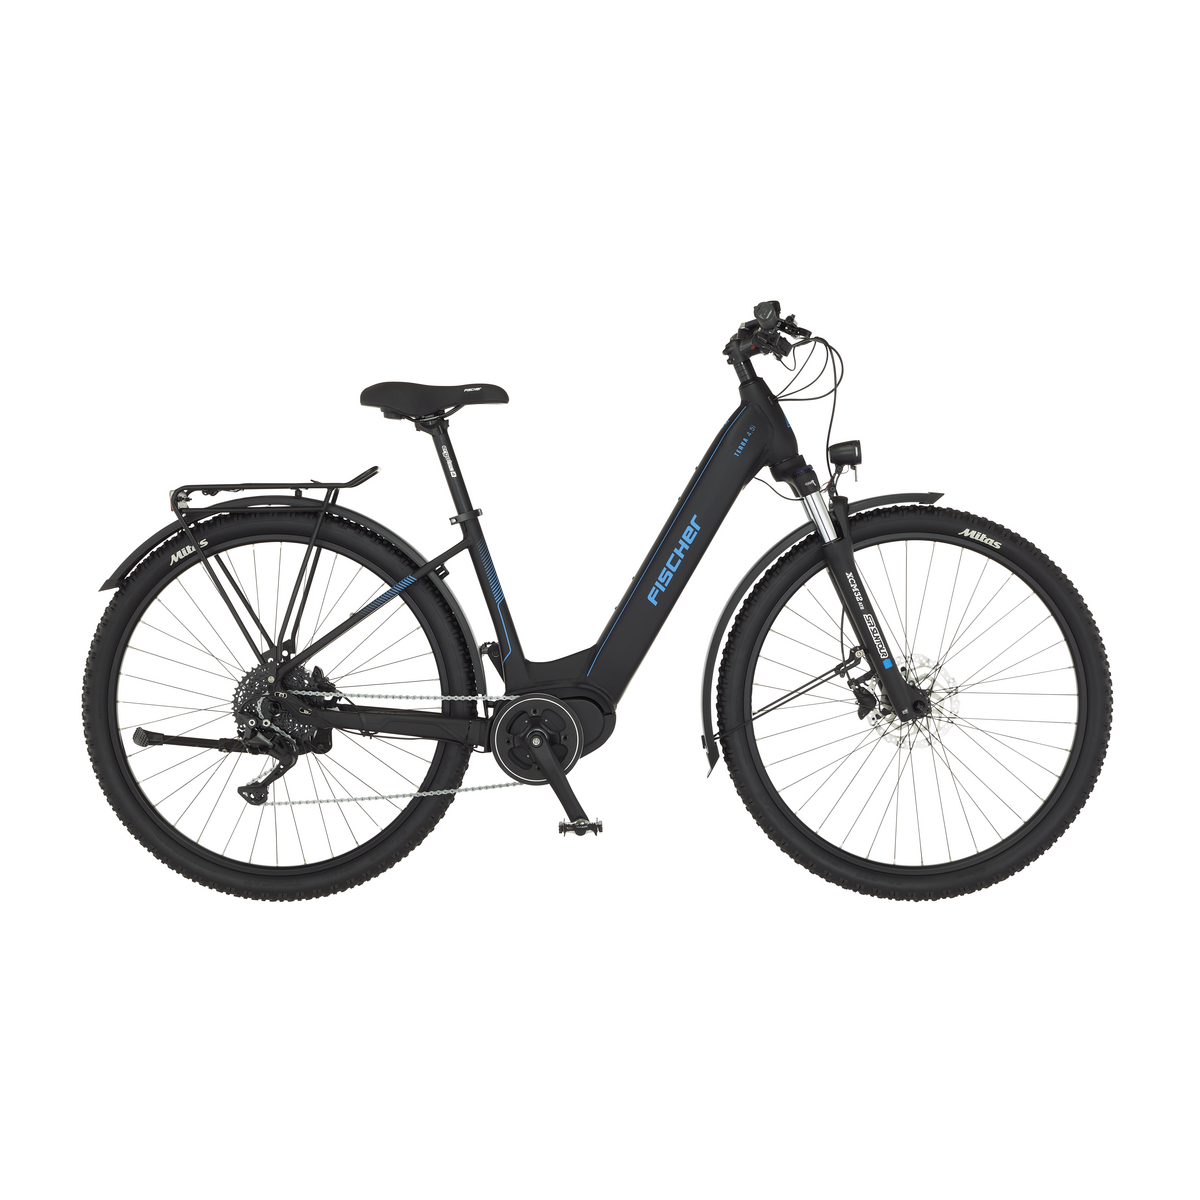 FISCHER TERRA 4.5i E-Bike - schwarz matt, 29 Zoll, RH 43 cm, 522 Wh  Generalüberholt | E-Bikes Trekking Outlet | E-Bikes - Outlet | Outlet |  Sale%